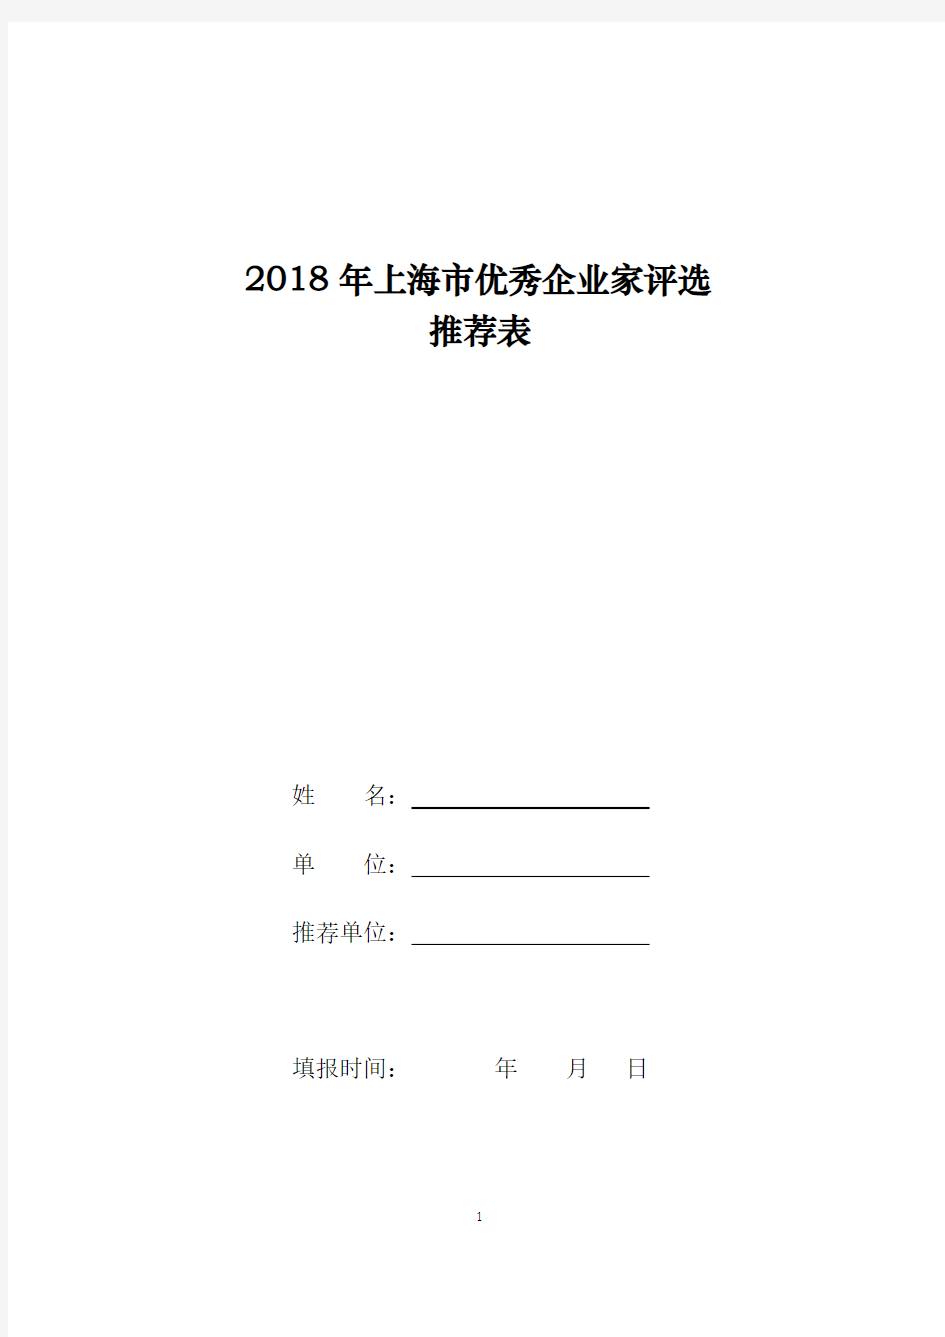 2018年上海优秀企业家评选